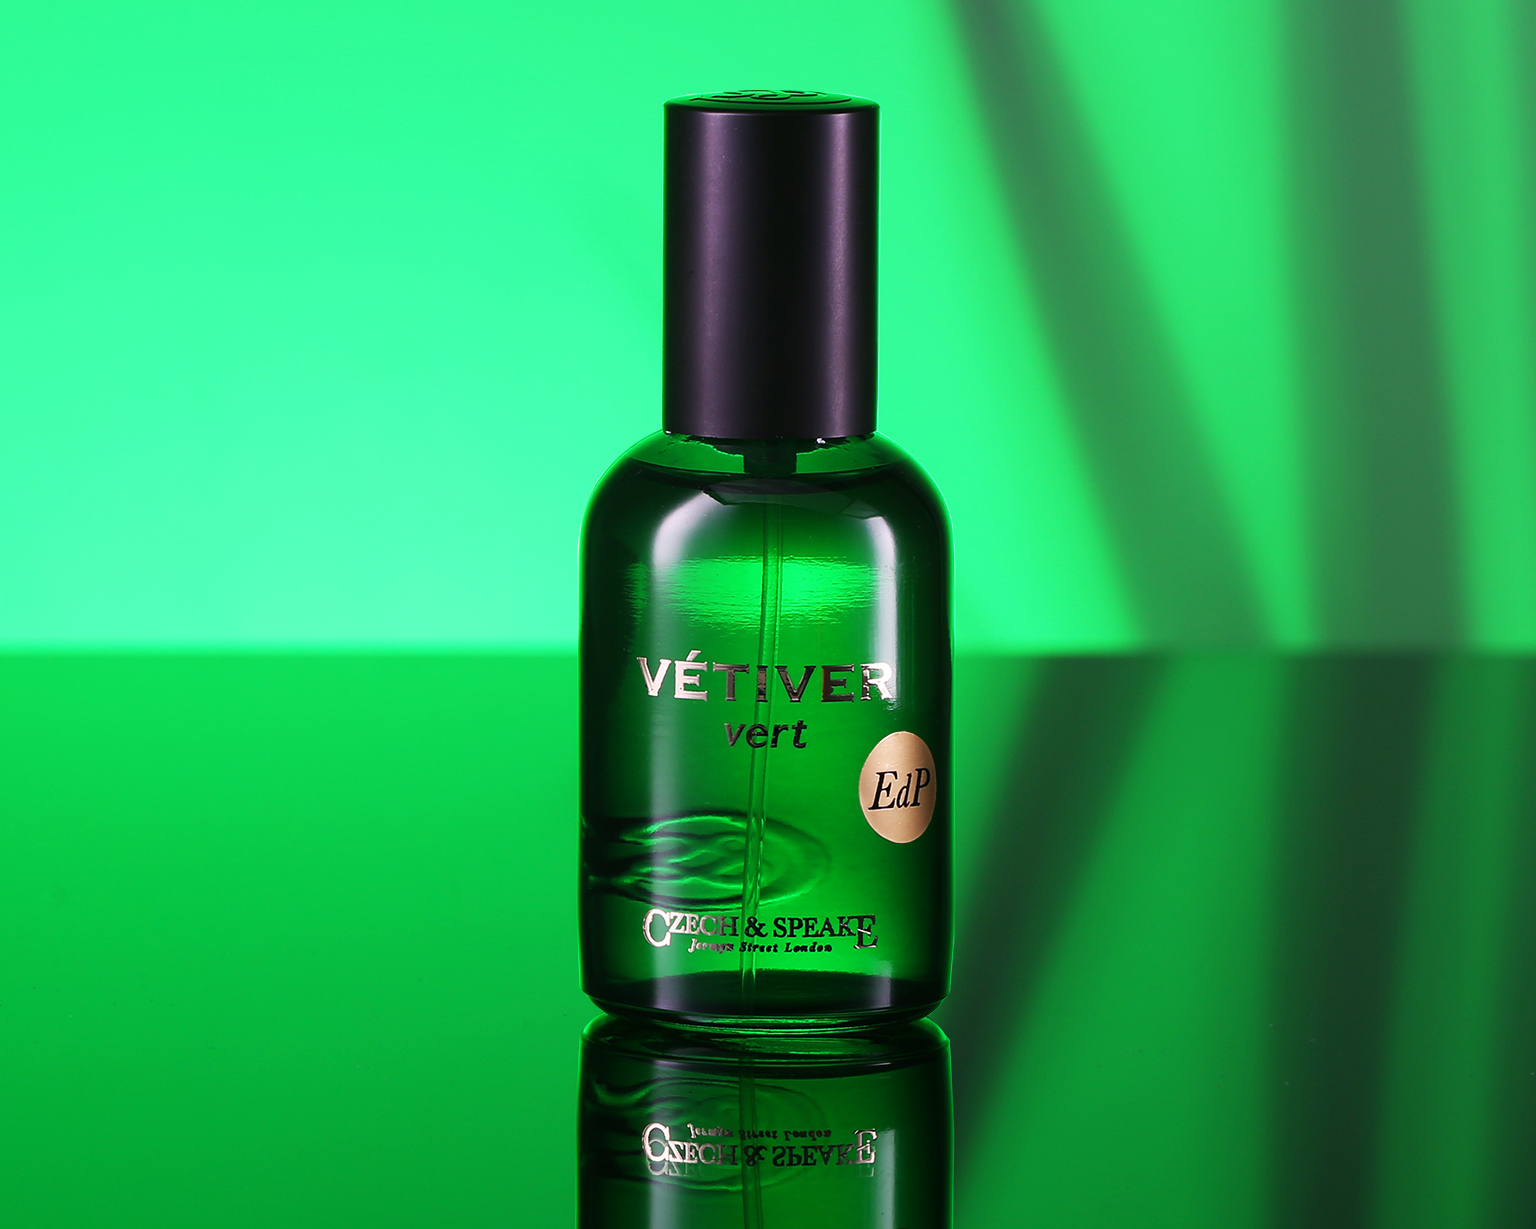 Czech &amp; Speake Vétiver Vert Eau de Parfum 50ml on green with grass